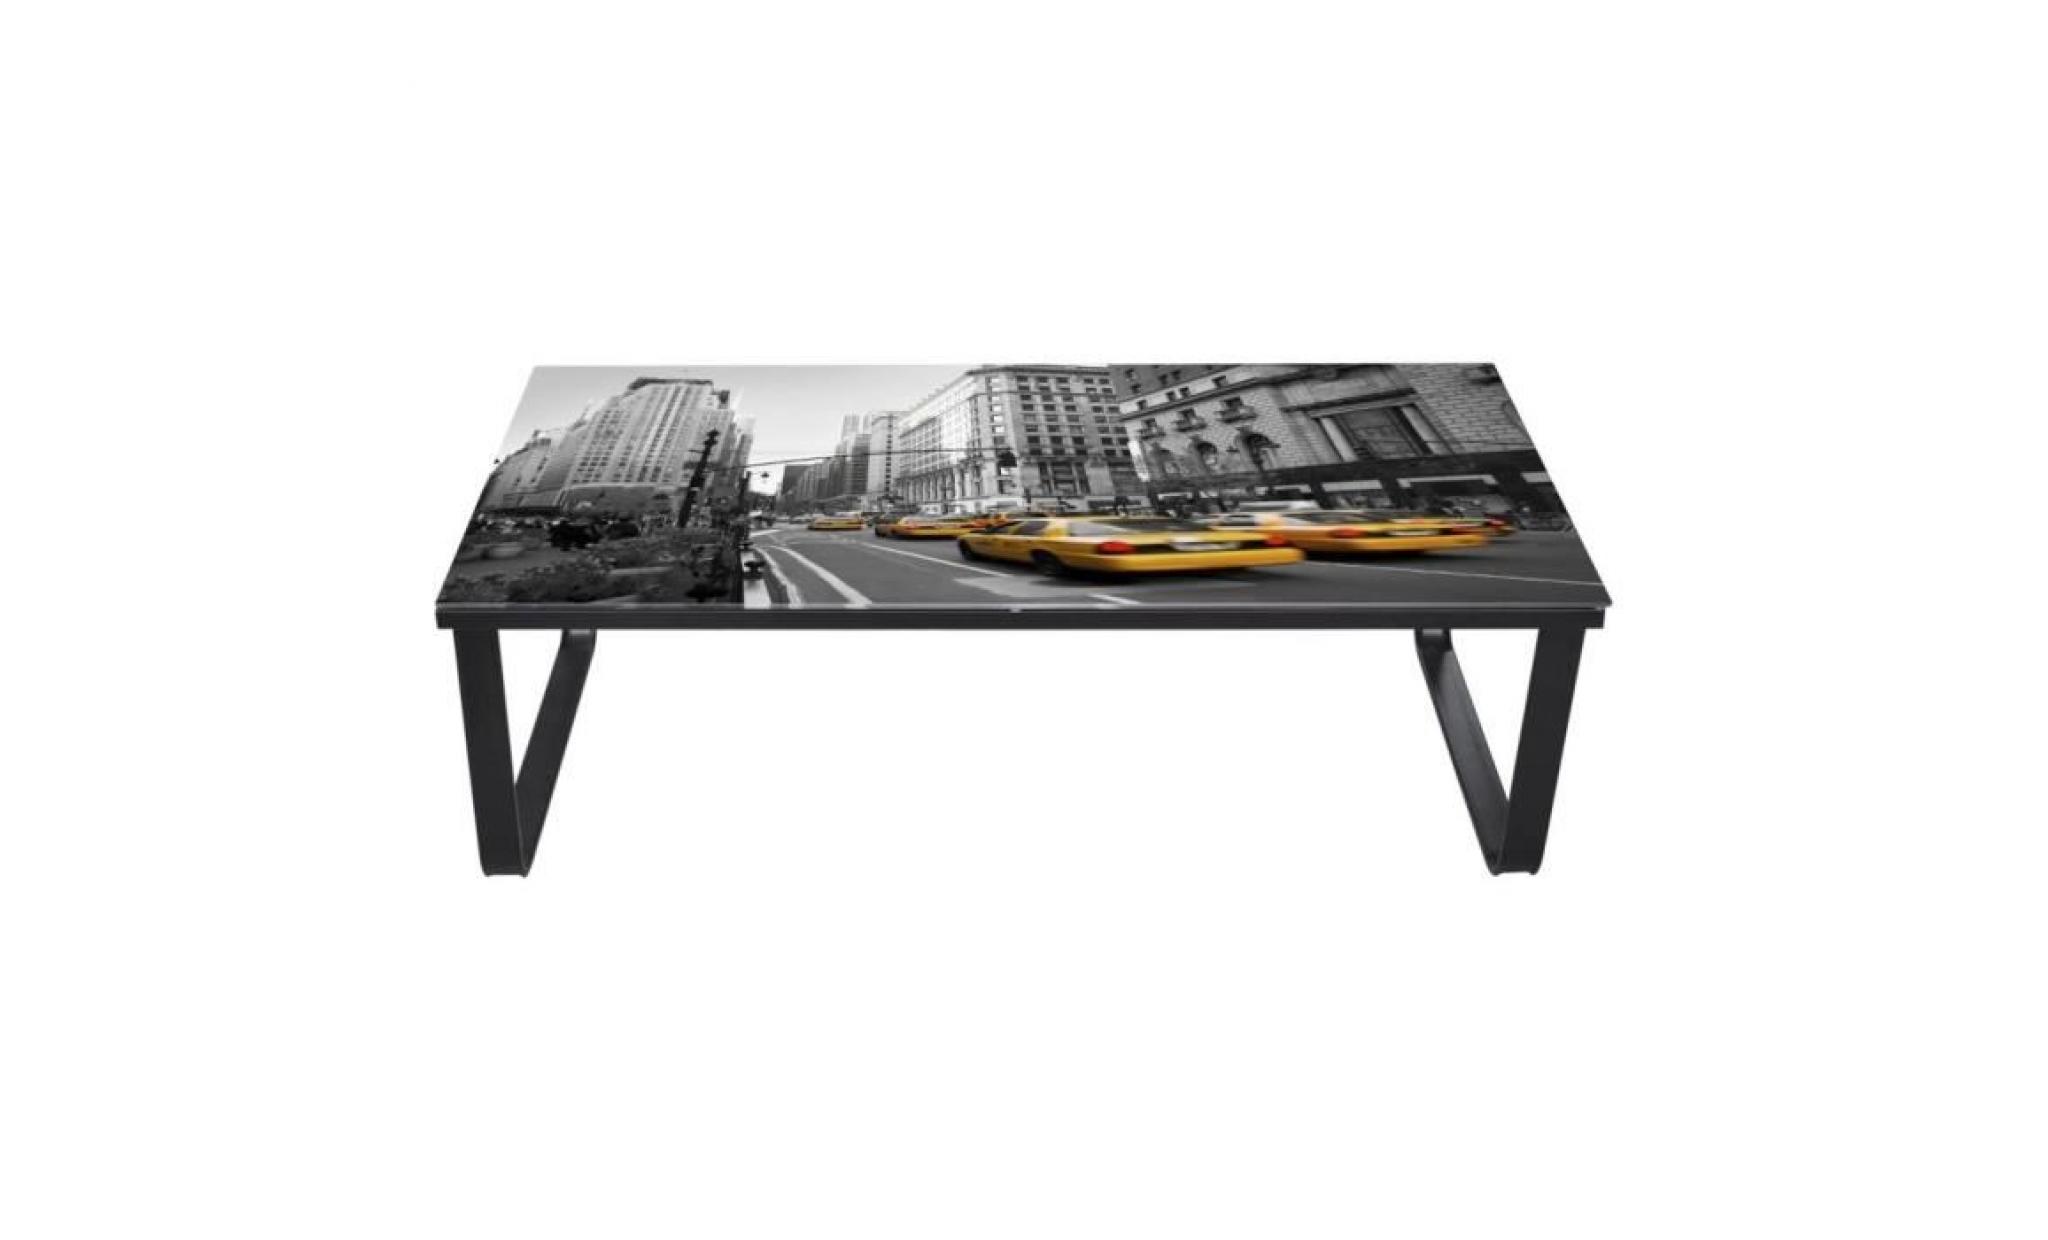 tables basses couleur : noir et impression forme : rectangulaire materiau : fer et verre tre